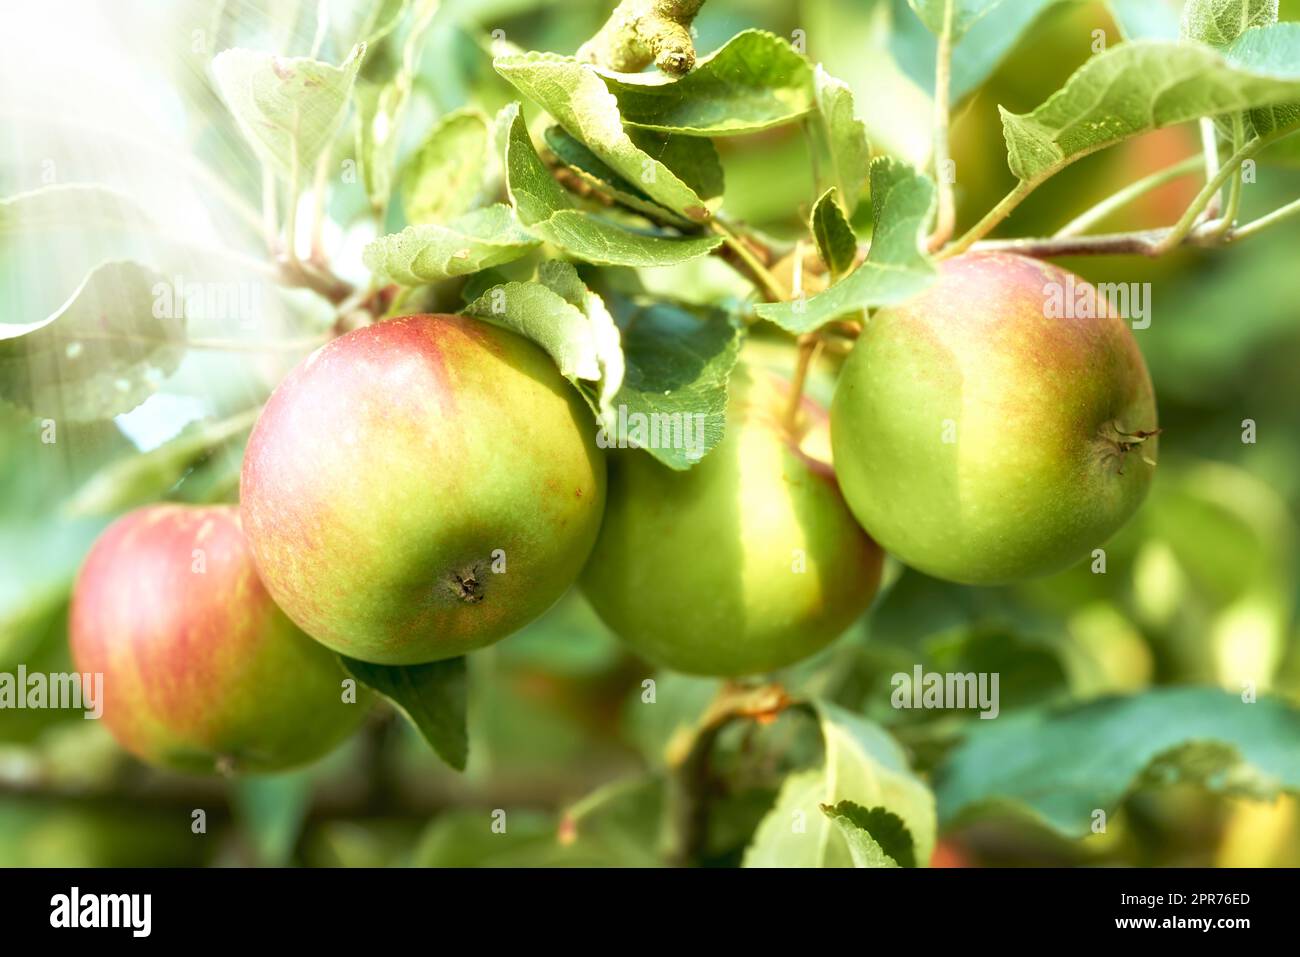 Gros plan de pommes poussant dans un verger ensoleillé en plein air avec une lentille de torche. Fruits frais crus cultivés et récoltés à partir d'arbres dans une pommeraie. Produits biologiques prêts à être cueillis et dégustés Banque D'Images